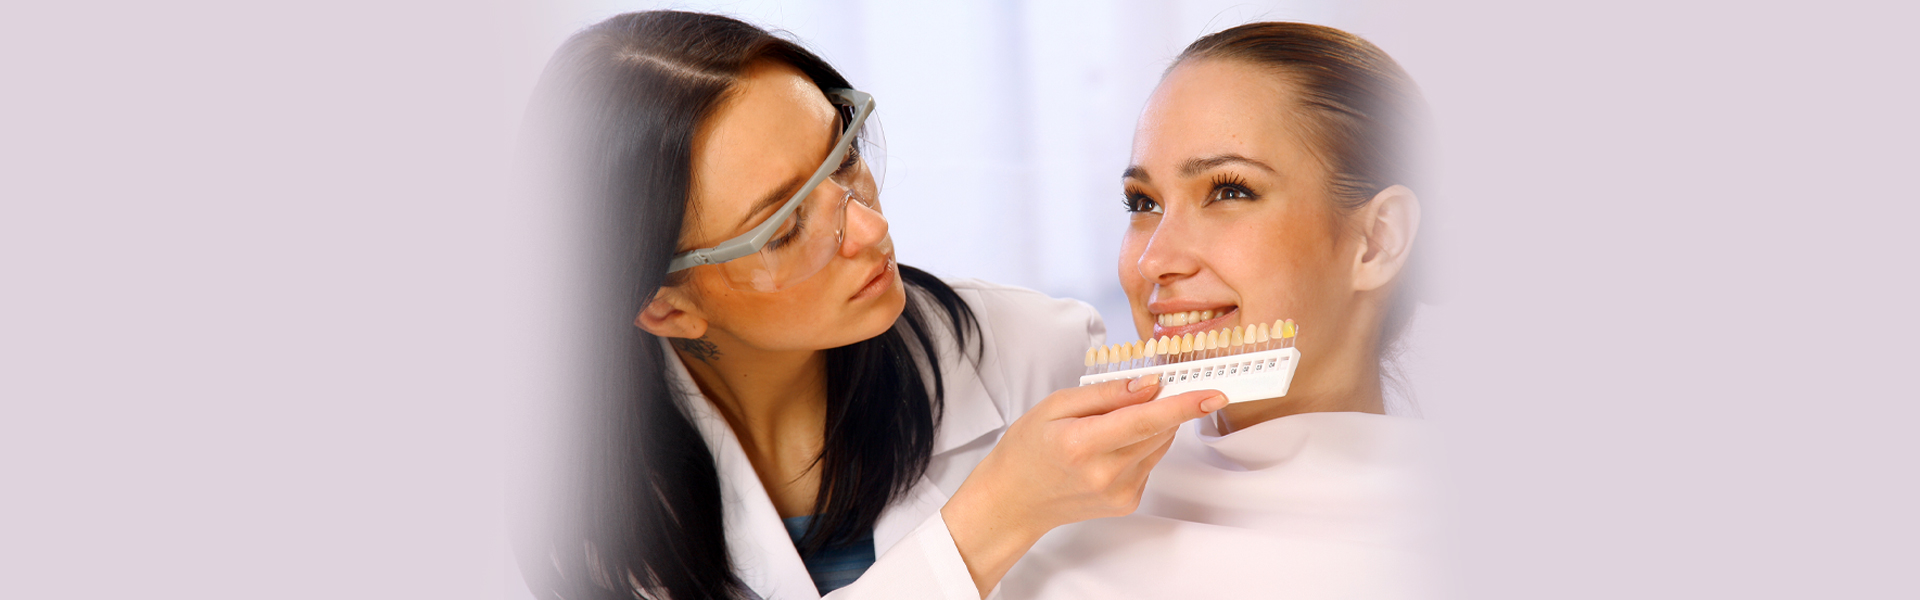 Making Your Teeth Look Straight Using Dental Veneers